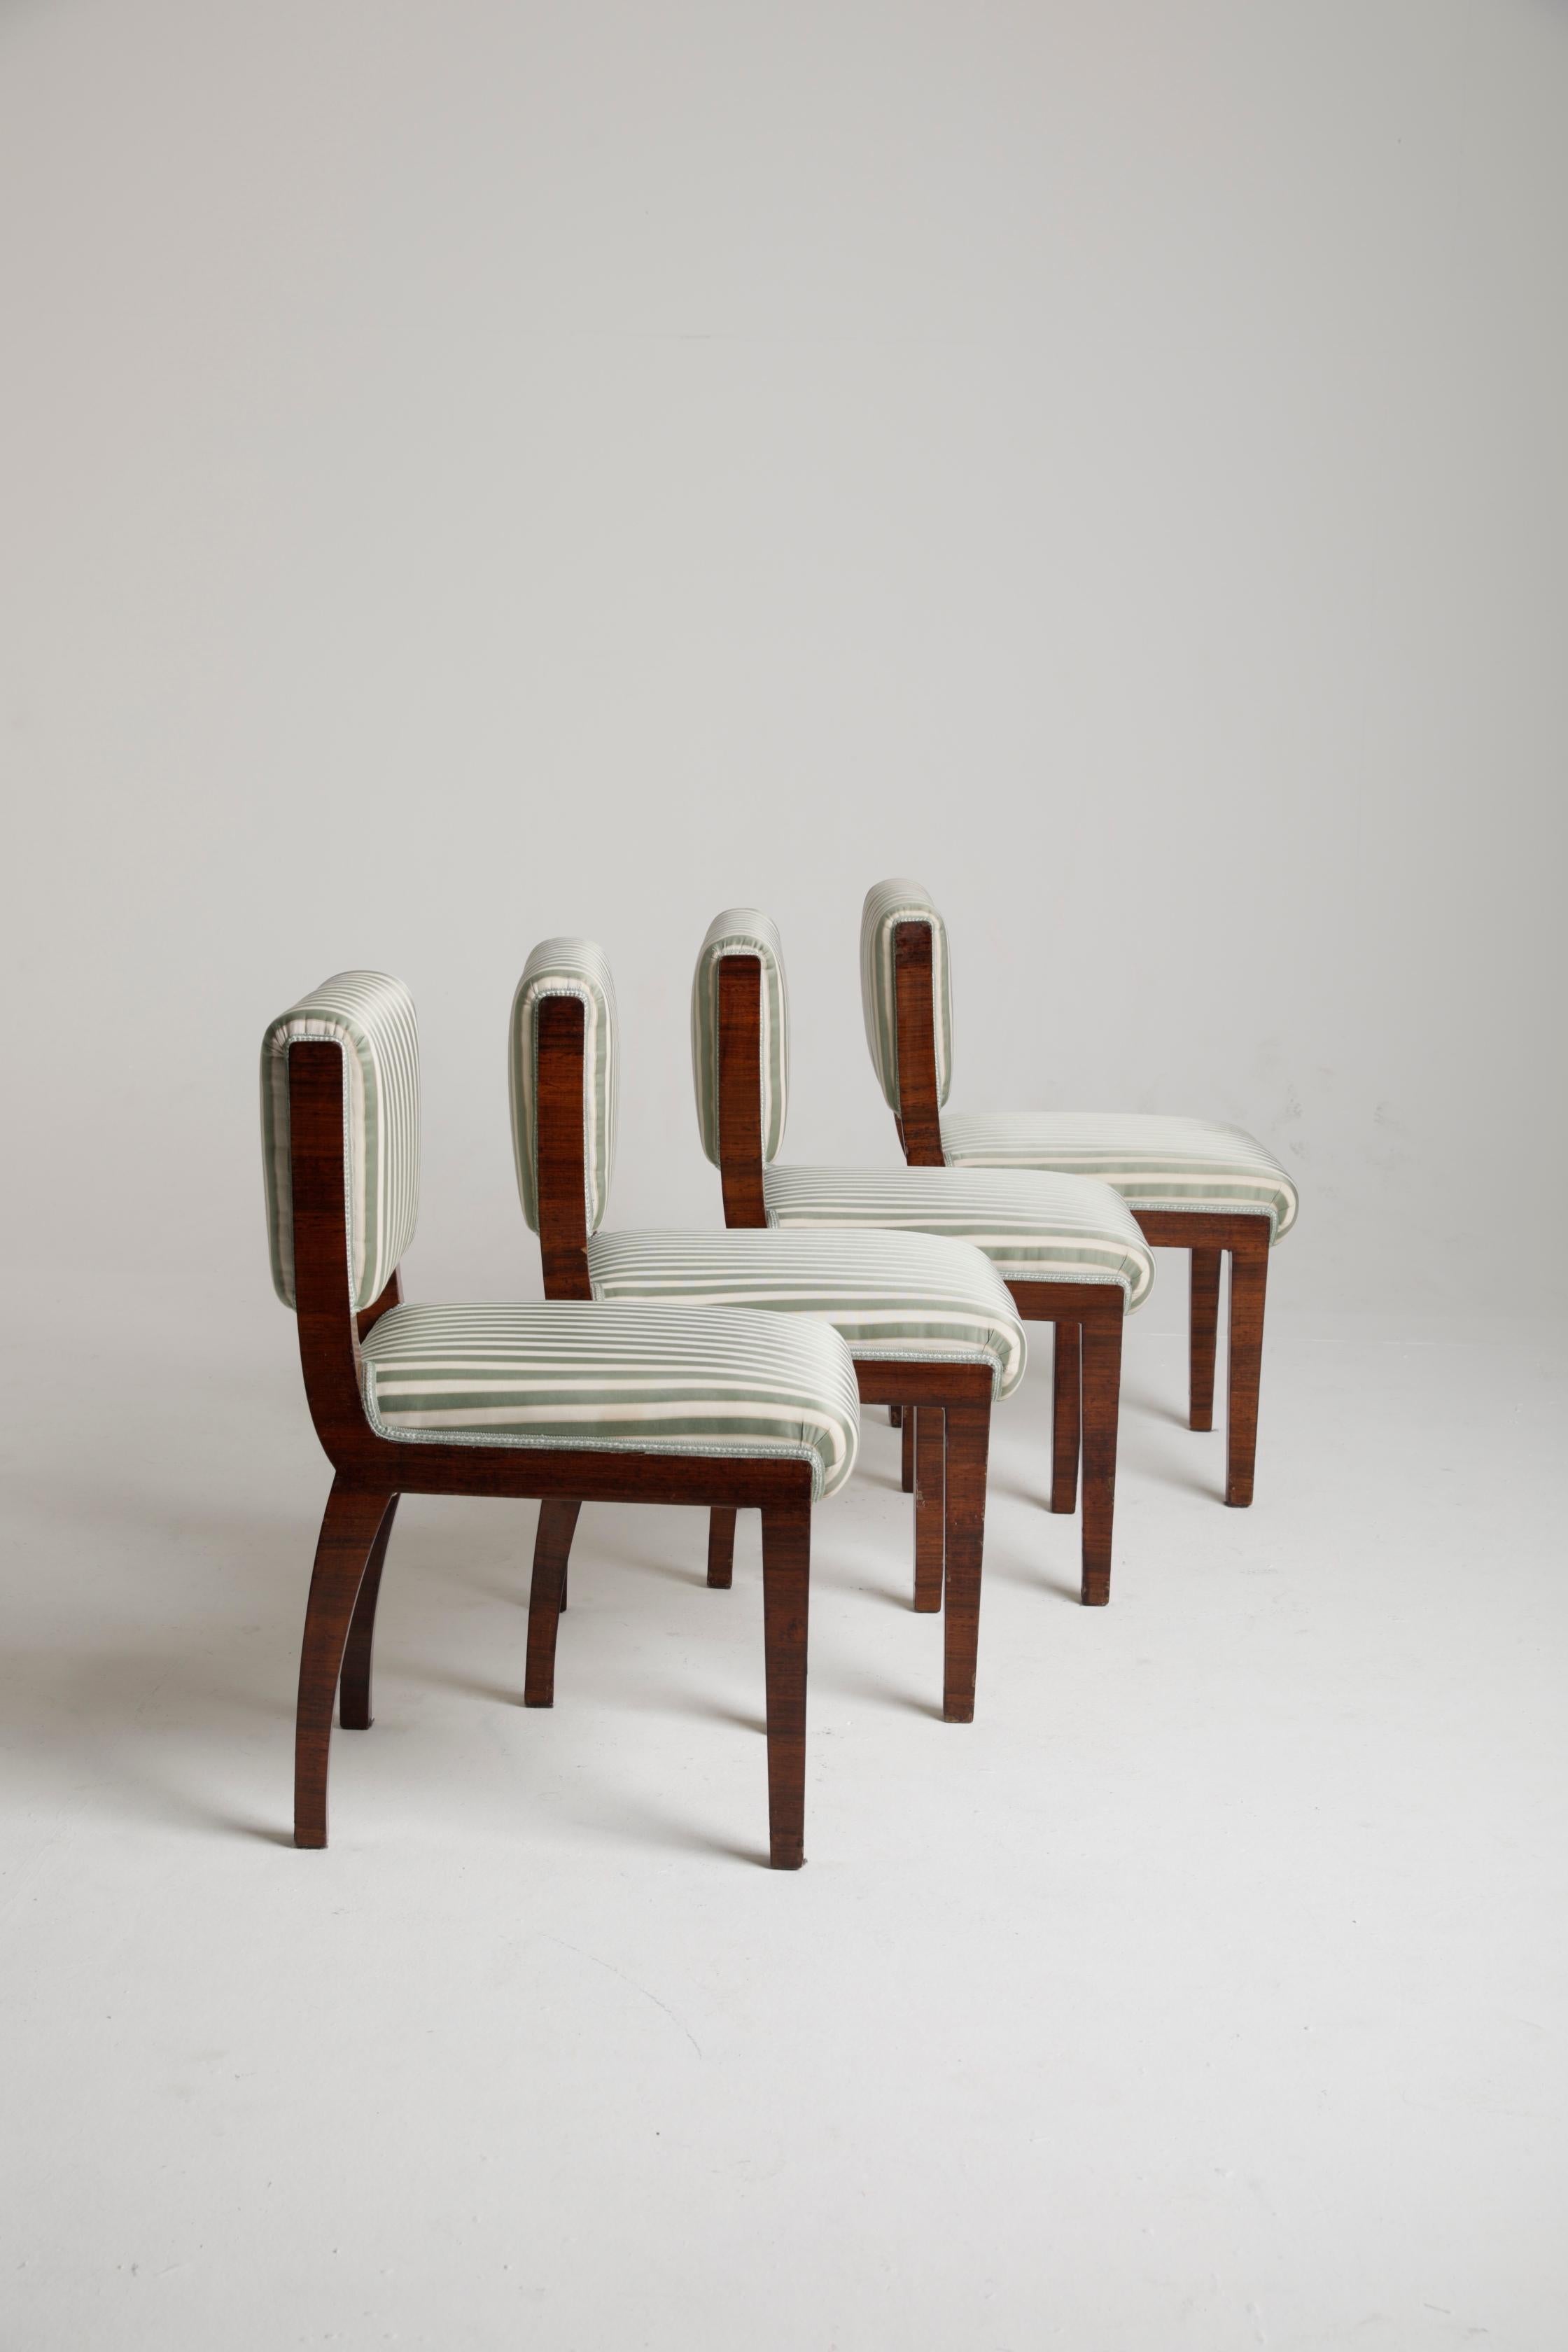 4 Stühle im Art Déco-Stil aus Holz und Stoff aus einer bedeutenden italienischen Villa, die dem berühmten italienischen Architekten und Designer Melchiorre BEGA zuzuschreiben ist. Es handelt sich um ein wirklich raffiniertes Set, das sich gut in